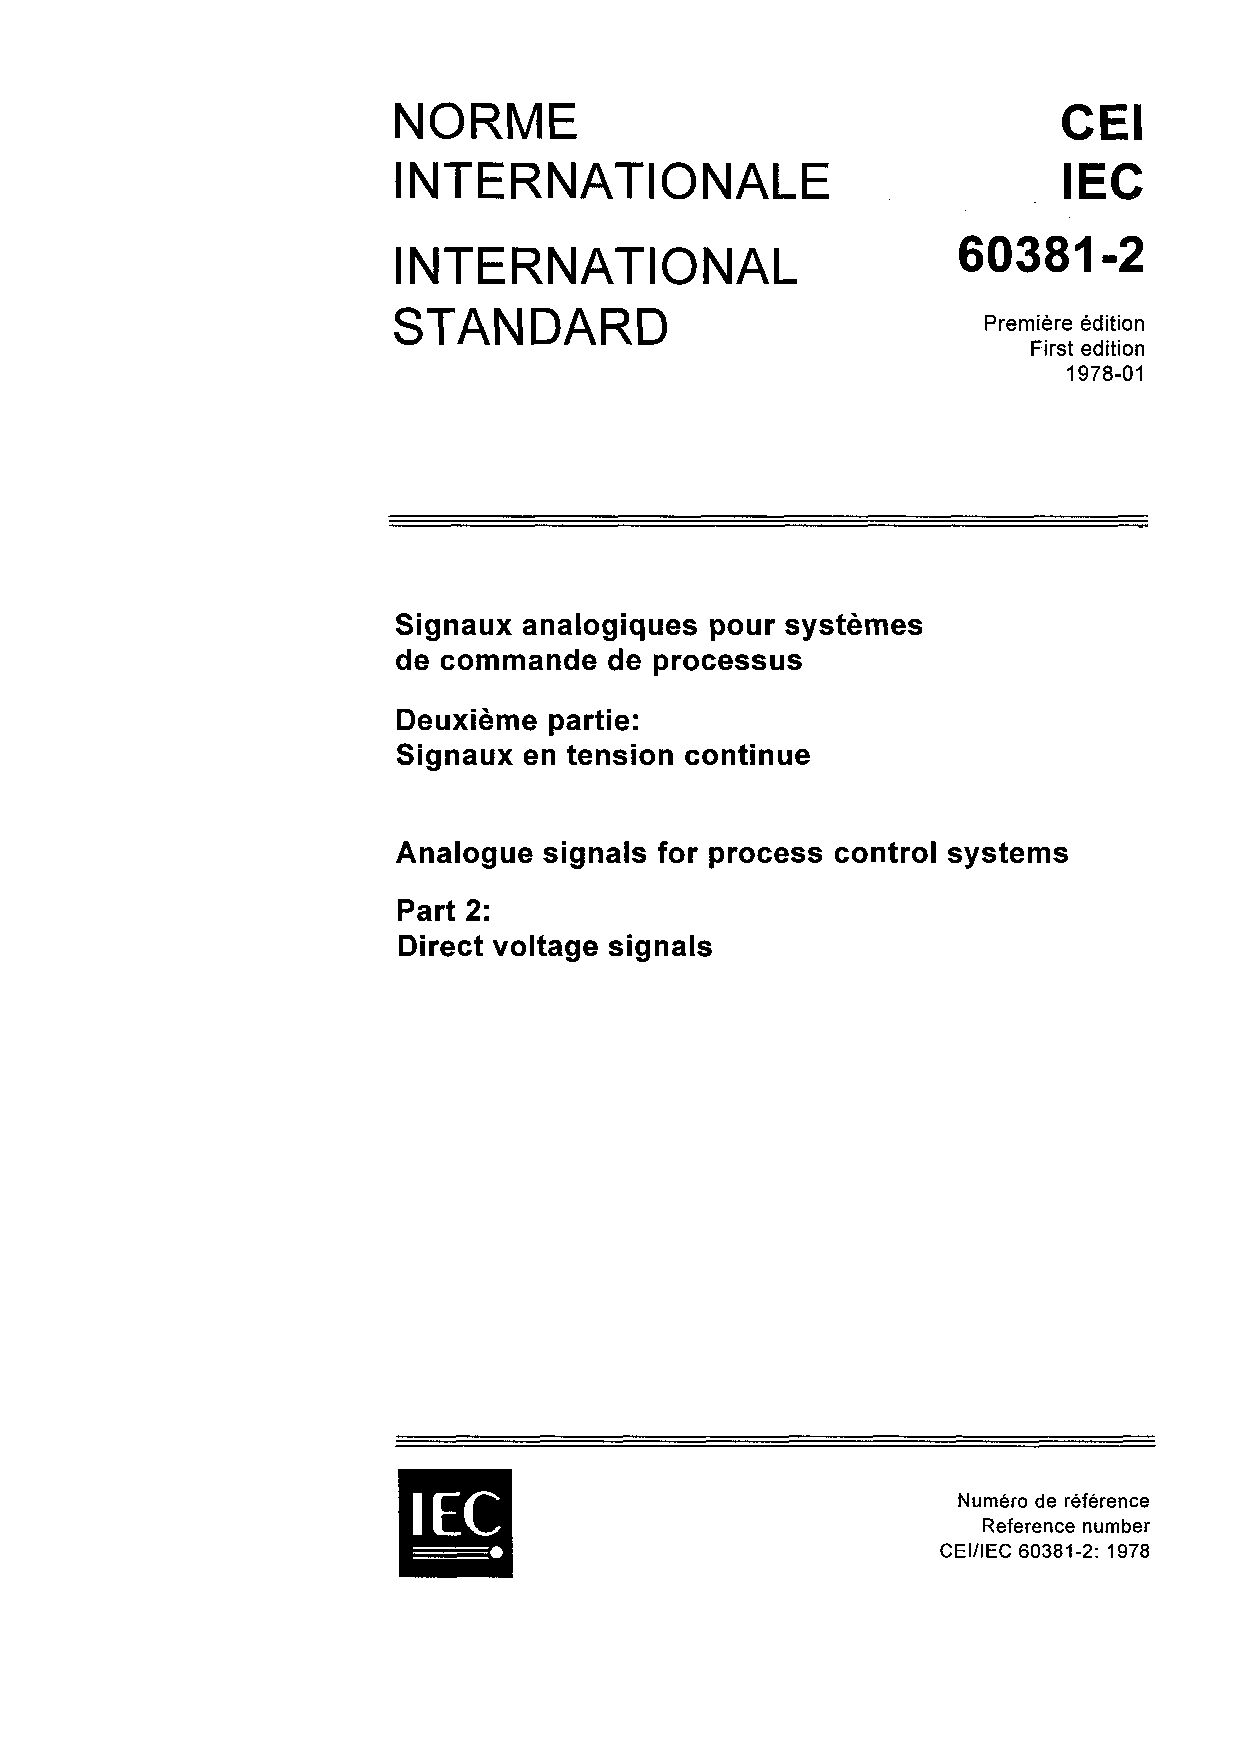 IEC 60381-2:1978